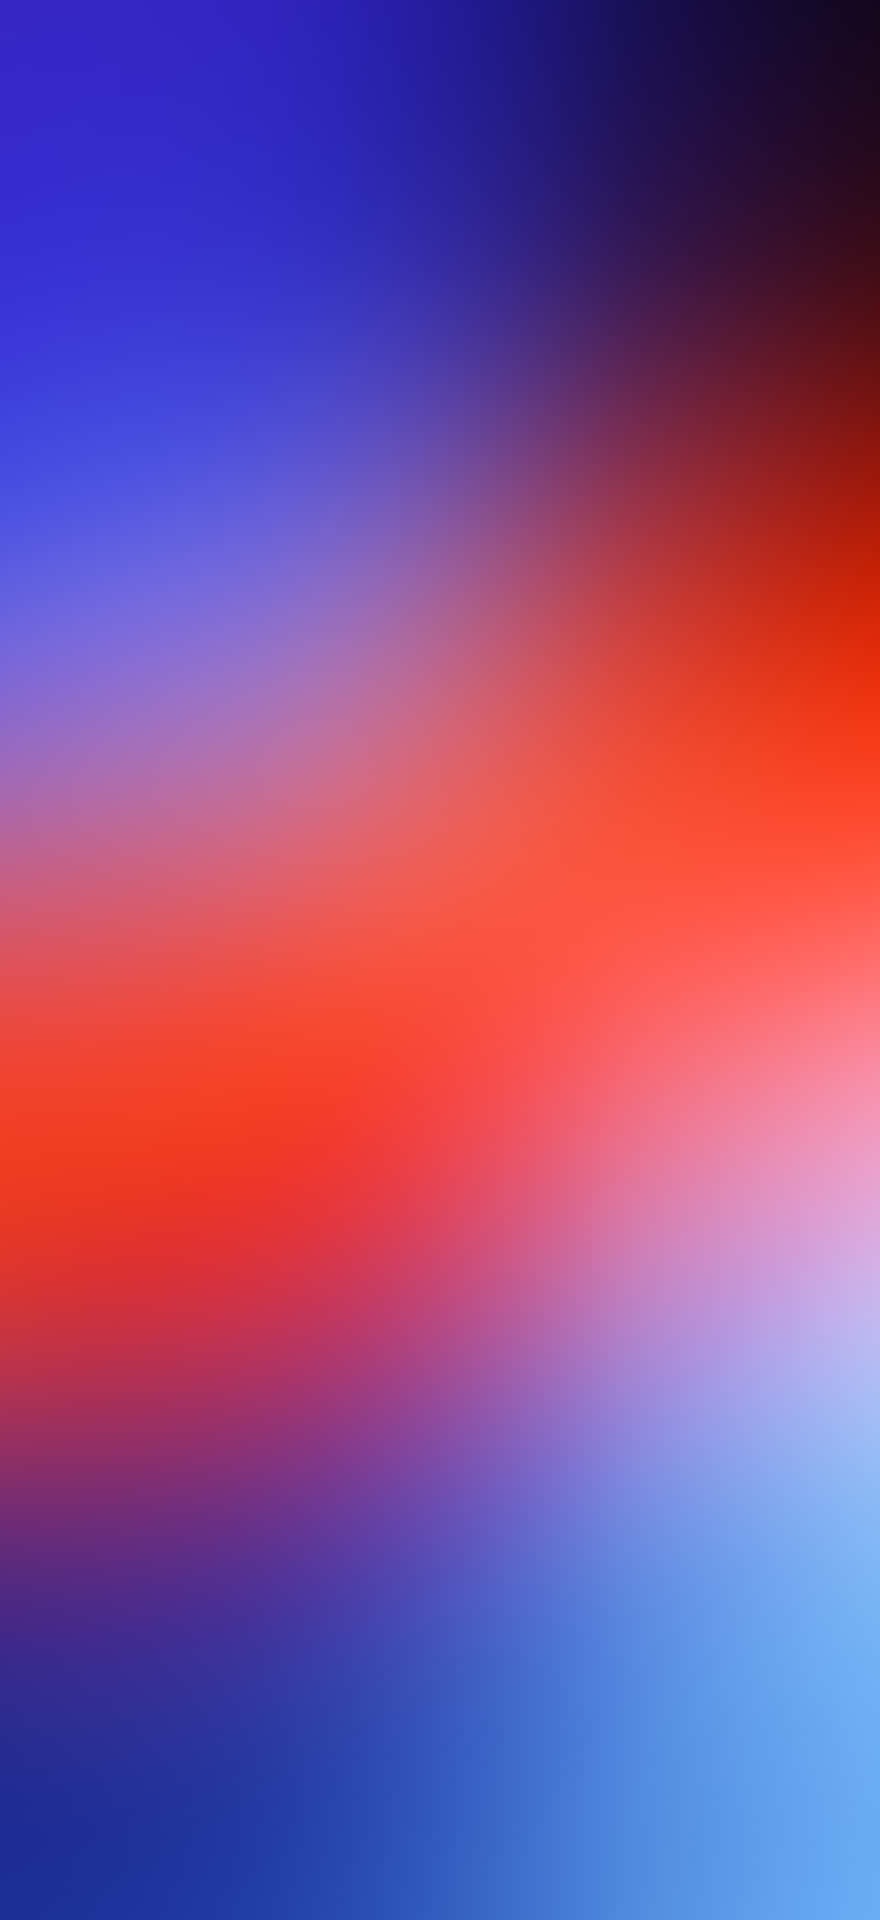 Einverschwommener Hintergrund Mit Blauen, Roten Und Orangenen Farben. Wallpaper